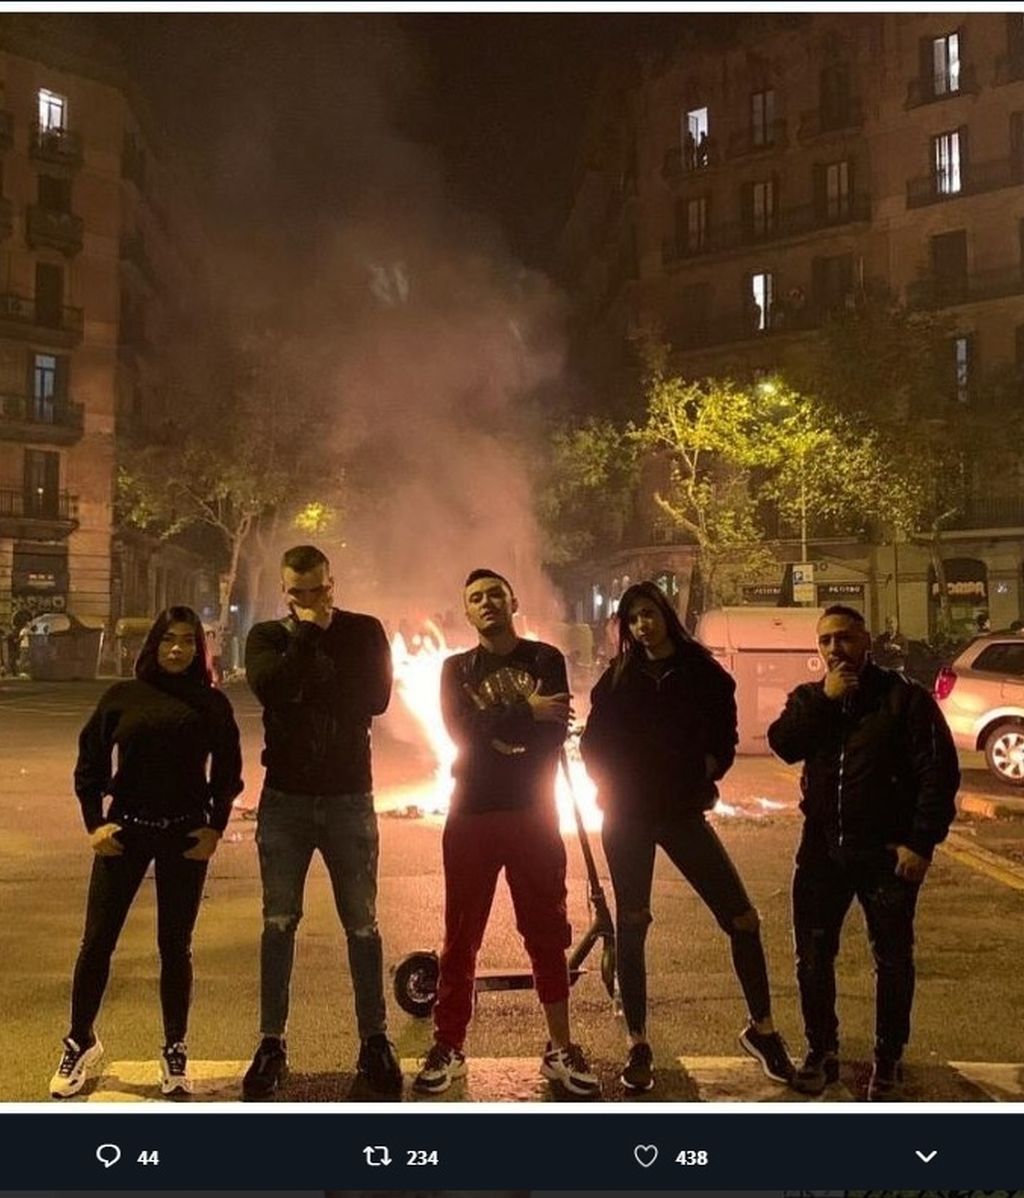 Postureo entre las llamas, las redes sociales se llenan de imágenes con las barricadas de Cataluña de fondo